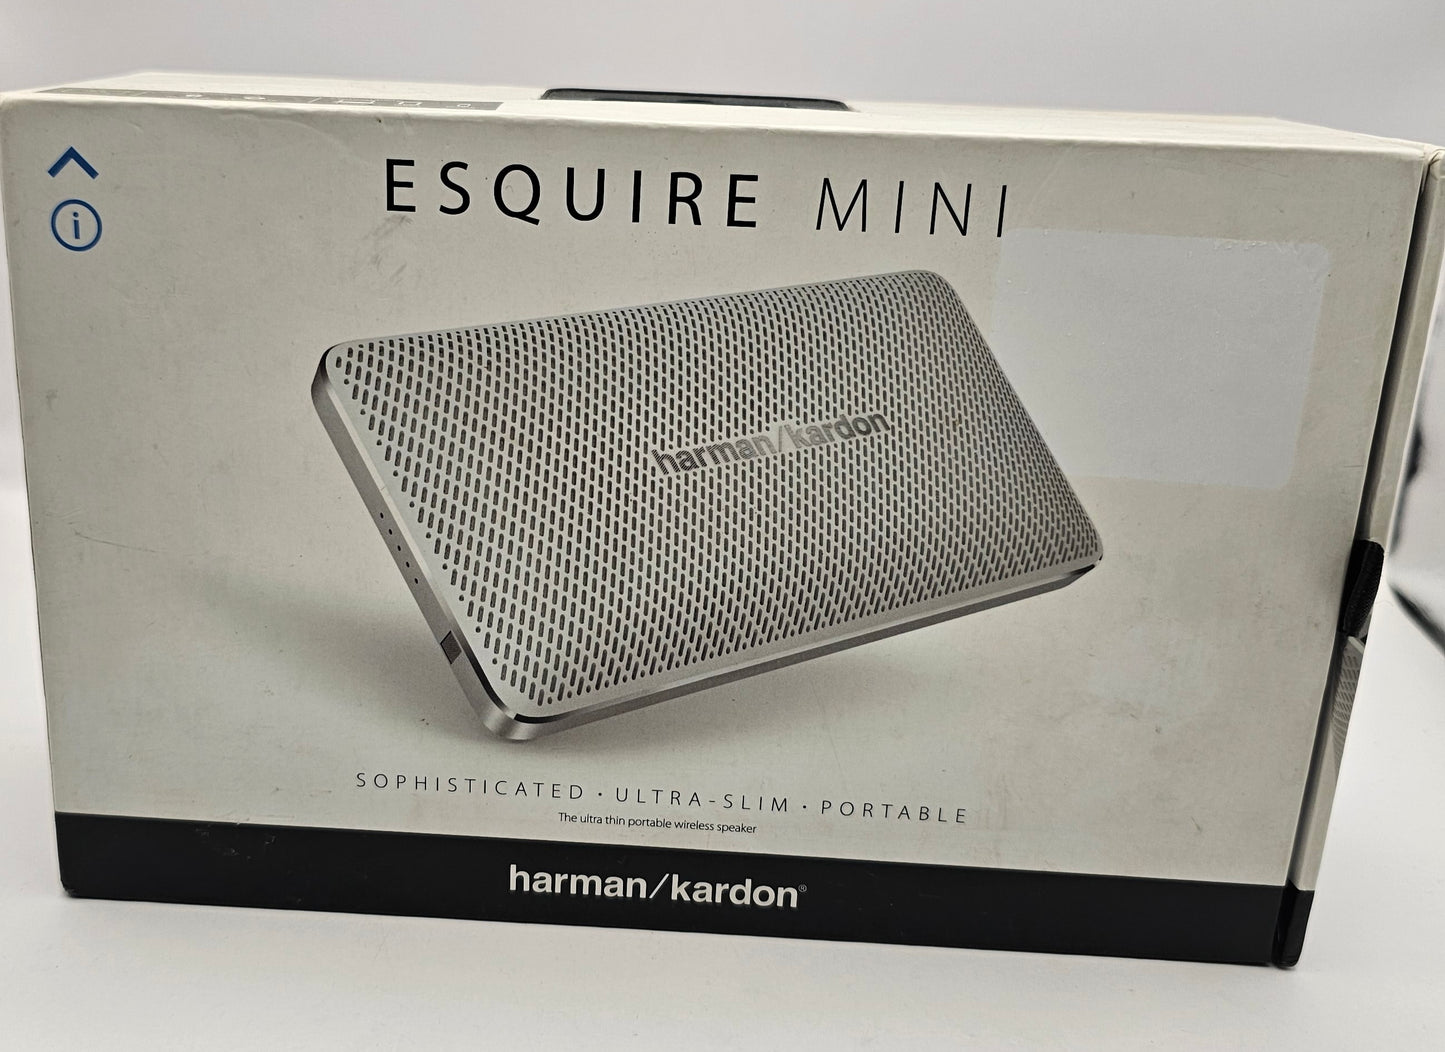 Harman/kardon Esquire mini portable